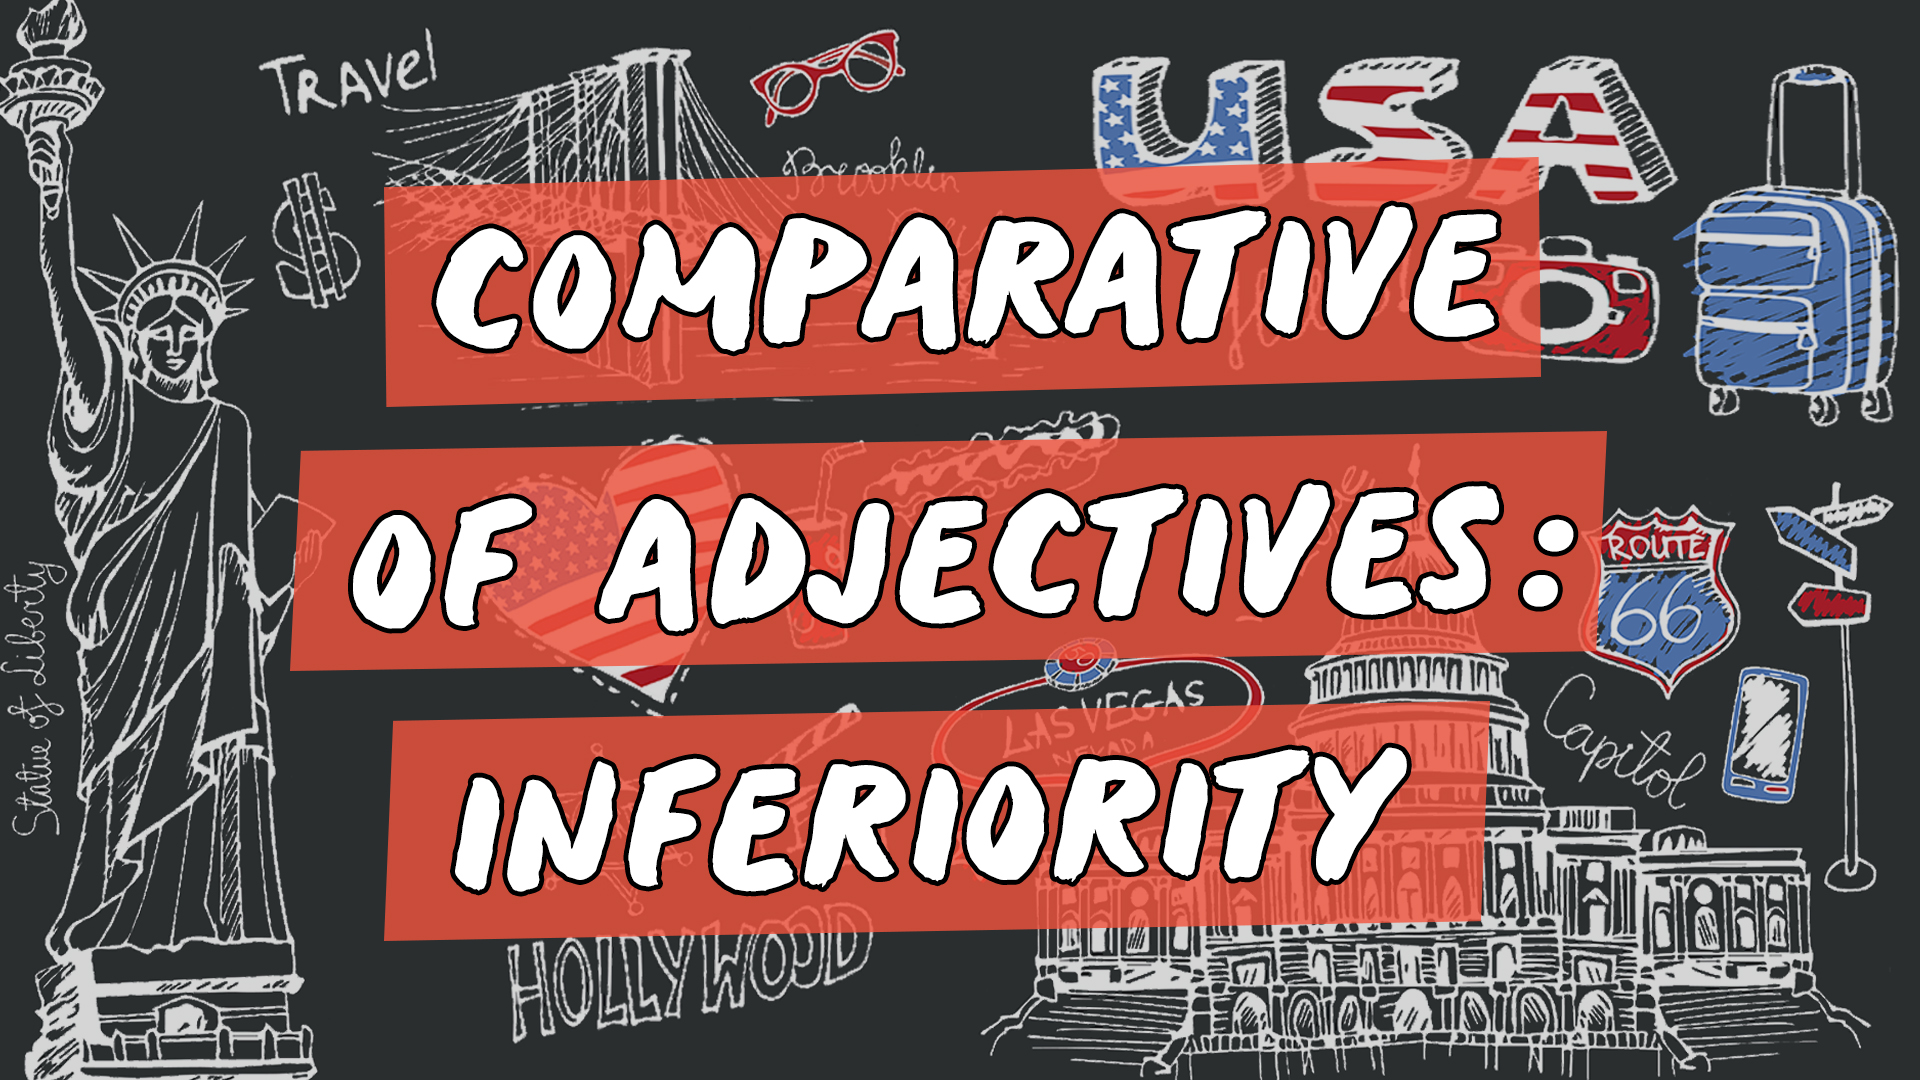 "Comparative of Adjectives: Inferiority" escrito sobre ilustração de diversos ícones que representam os Estados Unidos